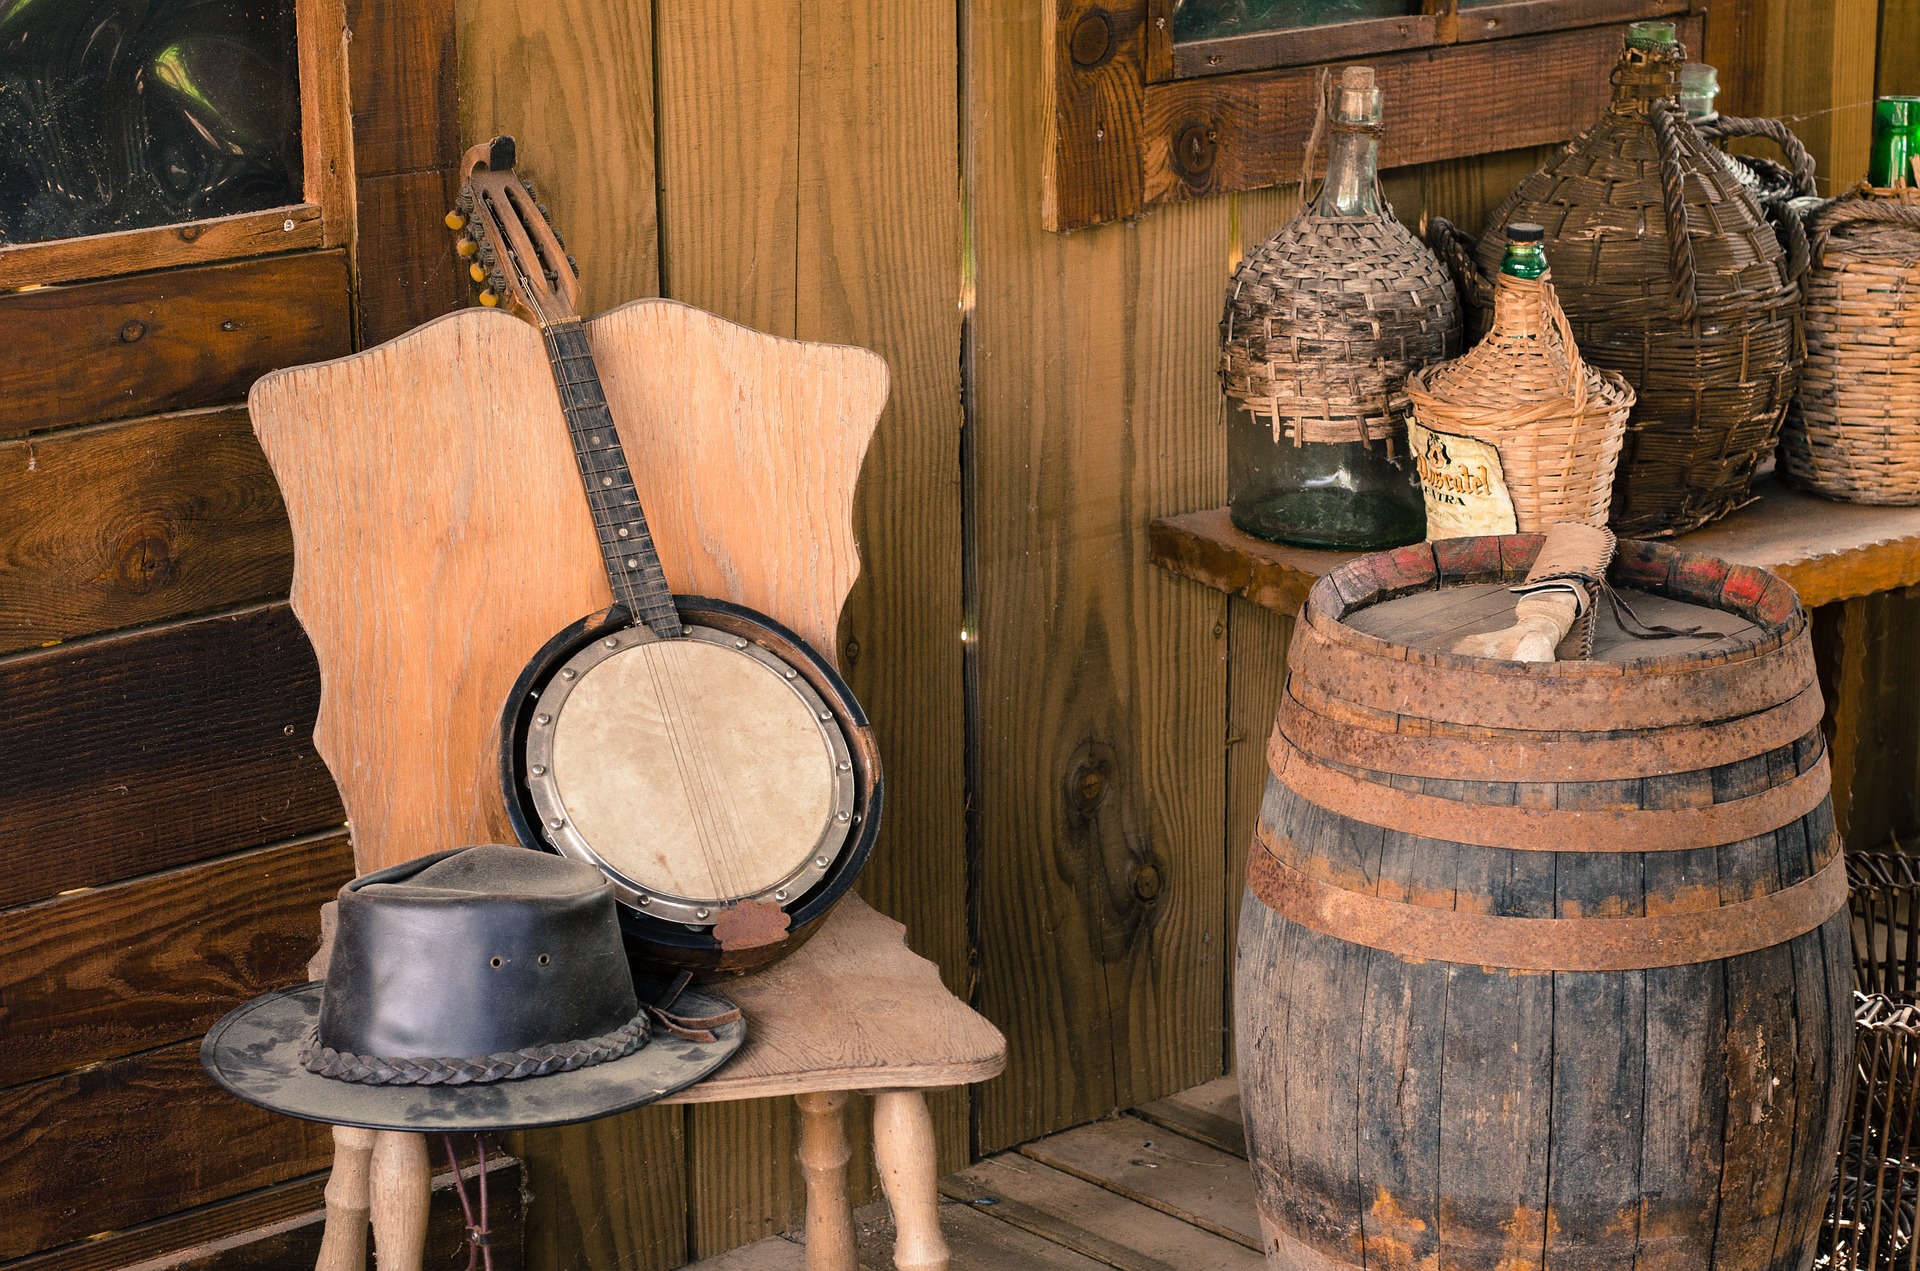 banjo, cowboy hat, bottles and barrel